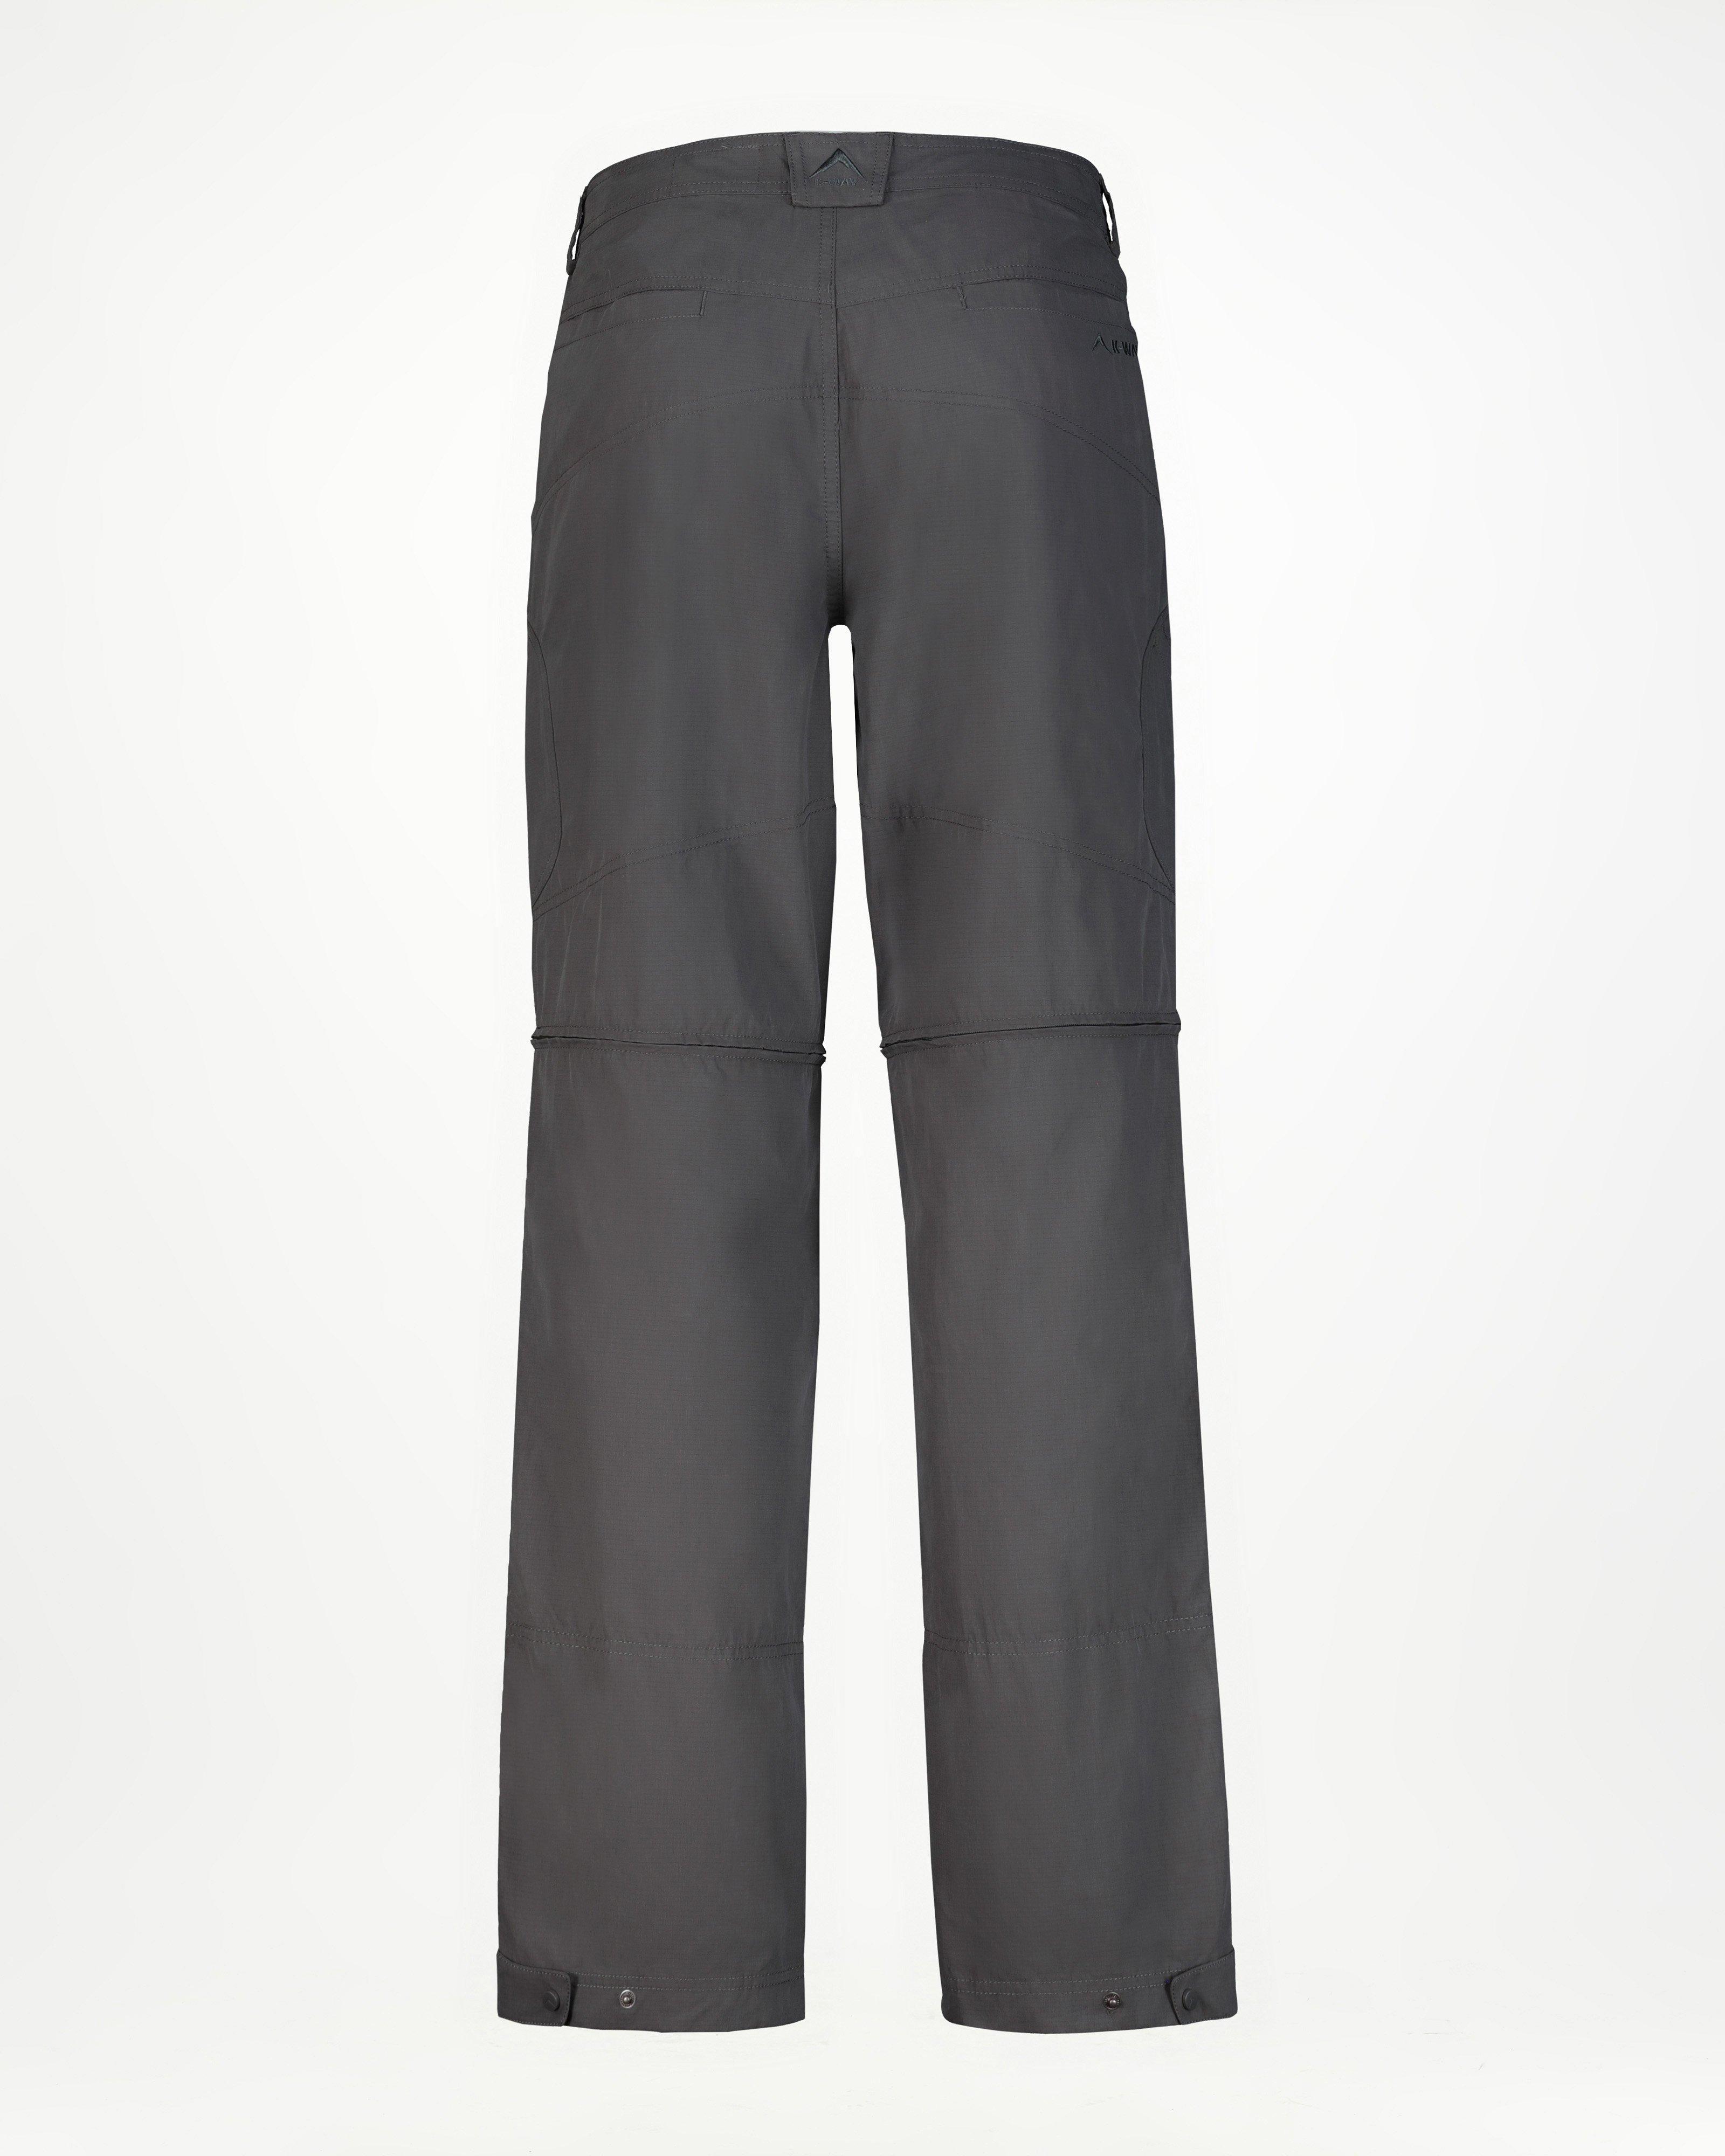 Vriendin Productie aluminium K-Way Men's Explorer Gorge 2.0 Trousers | Cape Union Mart